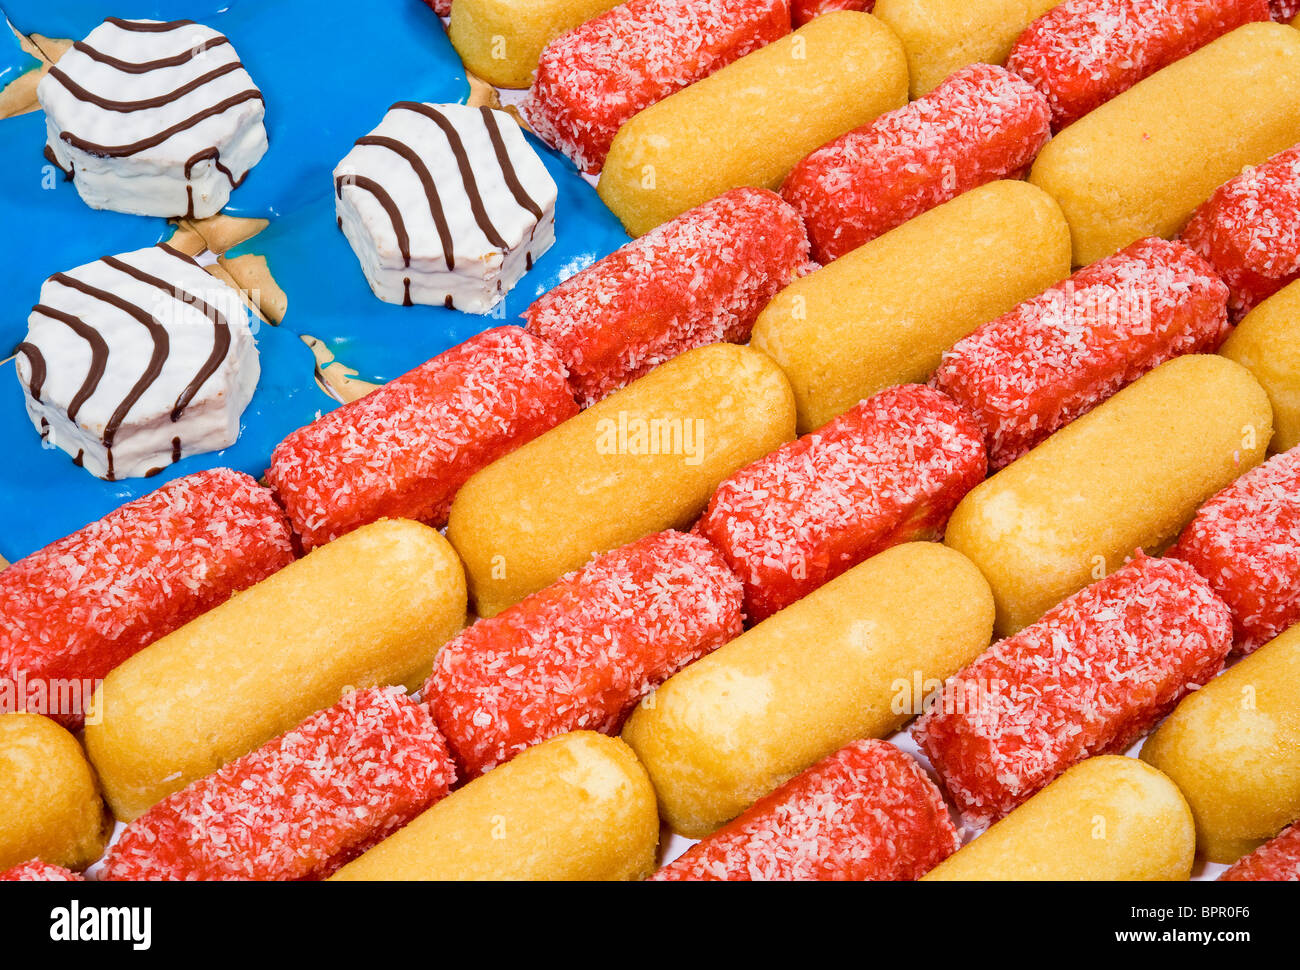 Eine amerikanische Flagge gemacht von Junk-Food-Produkten, einschließlich Twinkies, Zingers und Pop Tarts. Stockfoto